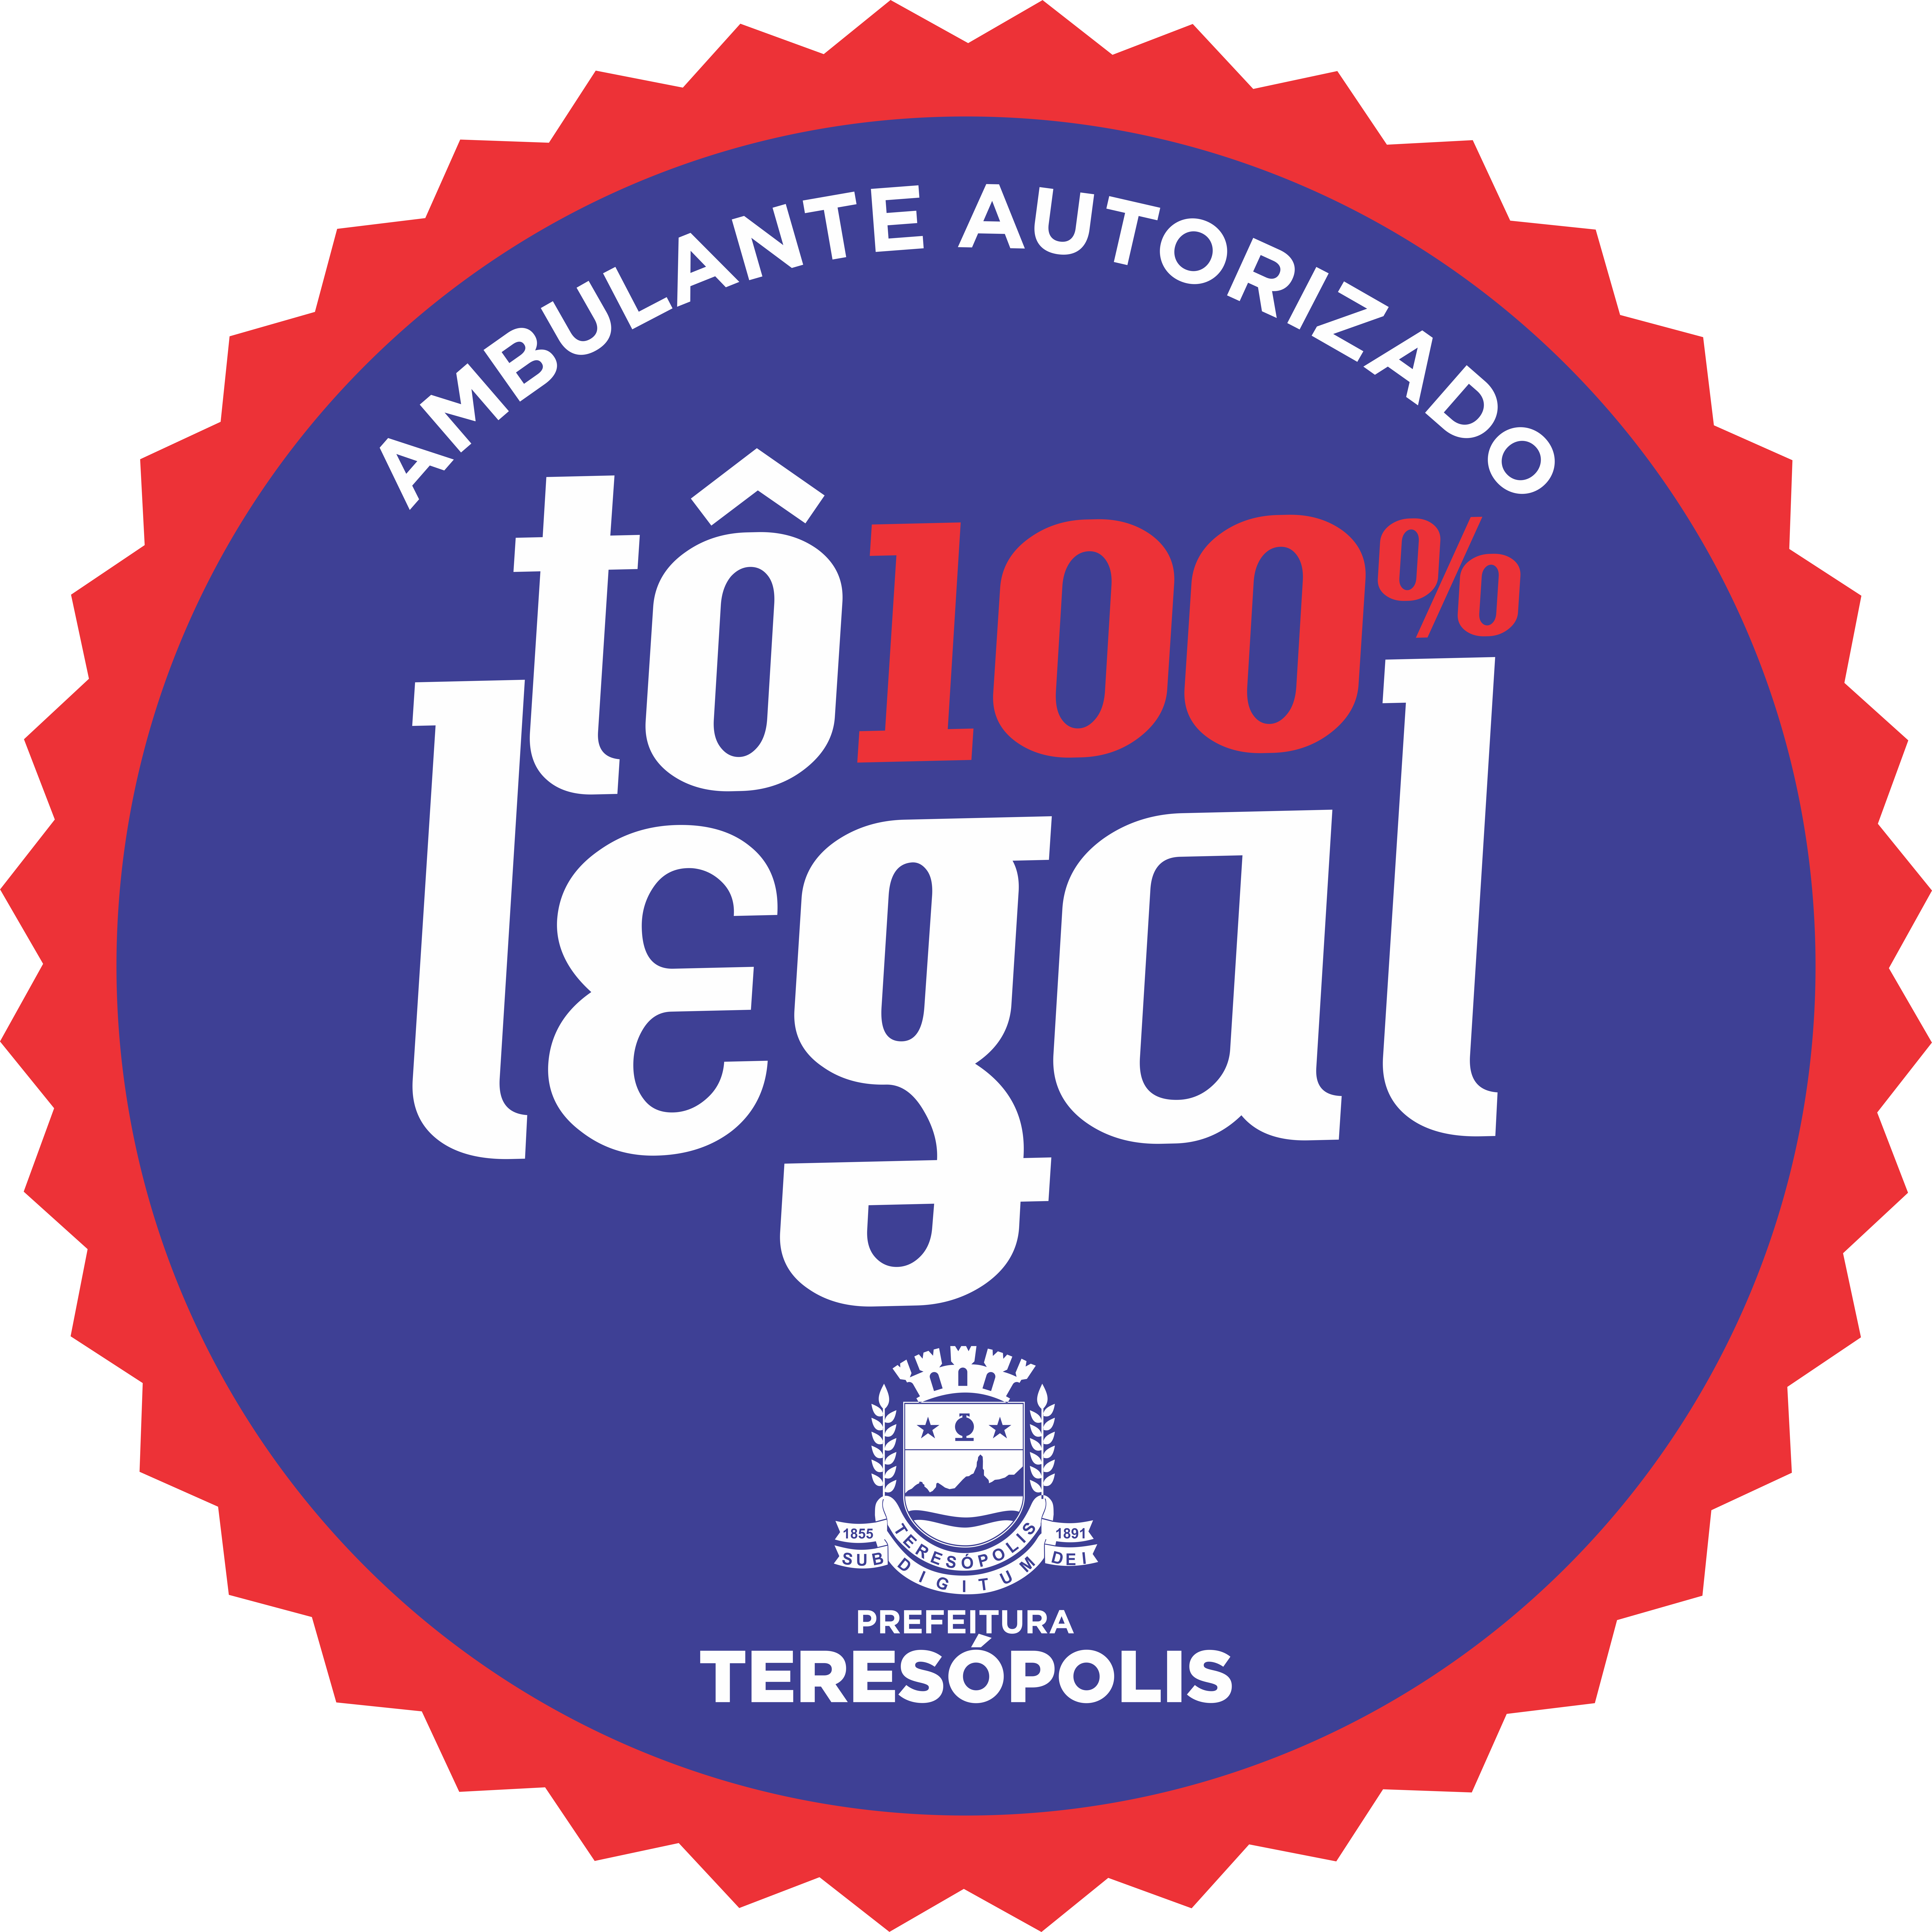 No momento você está vendo ‘Ambulante 100% Legal’: Prefeitura de Teresópolis sorteia nesta sexta, dia 24, vagas em diversos pontos da cidade